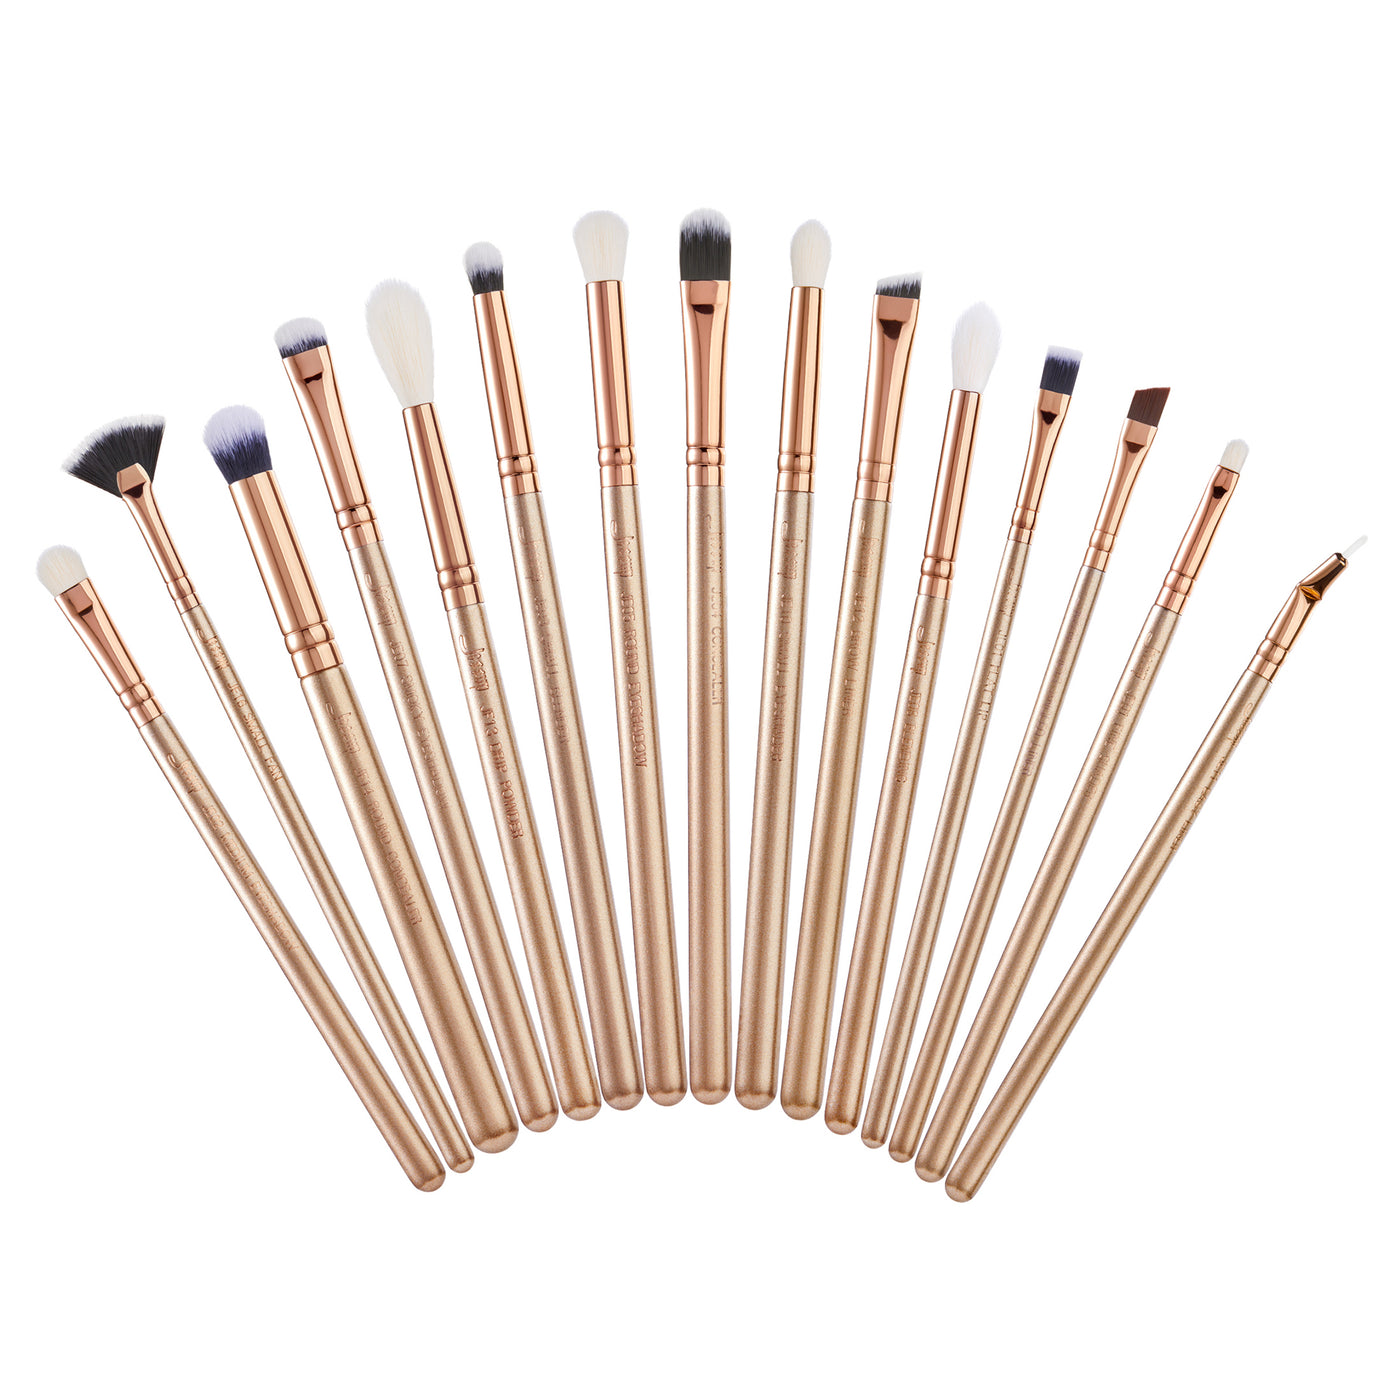 eyeshadow blending brushes set gold 15pcs - Jessup Beauty UK